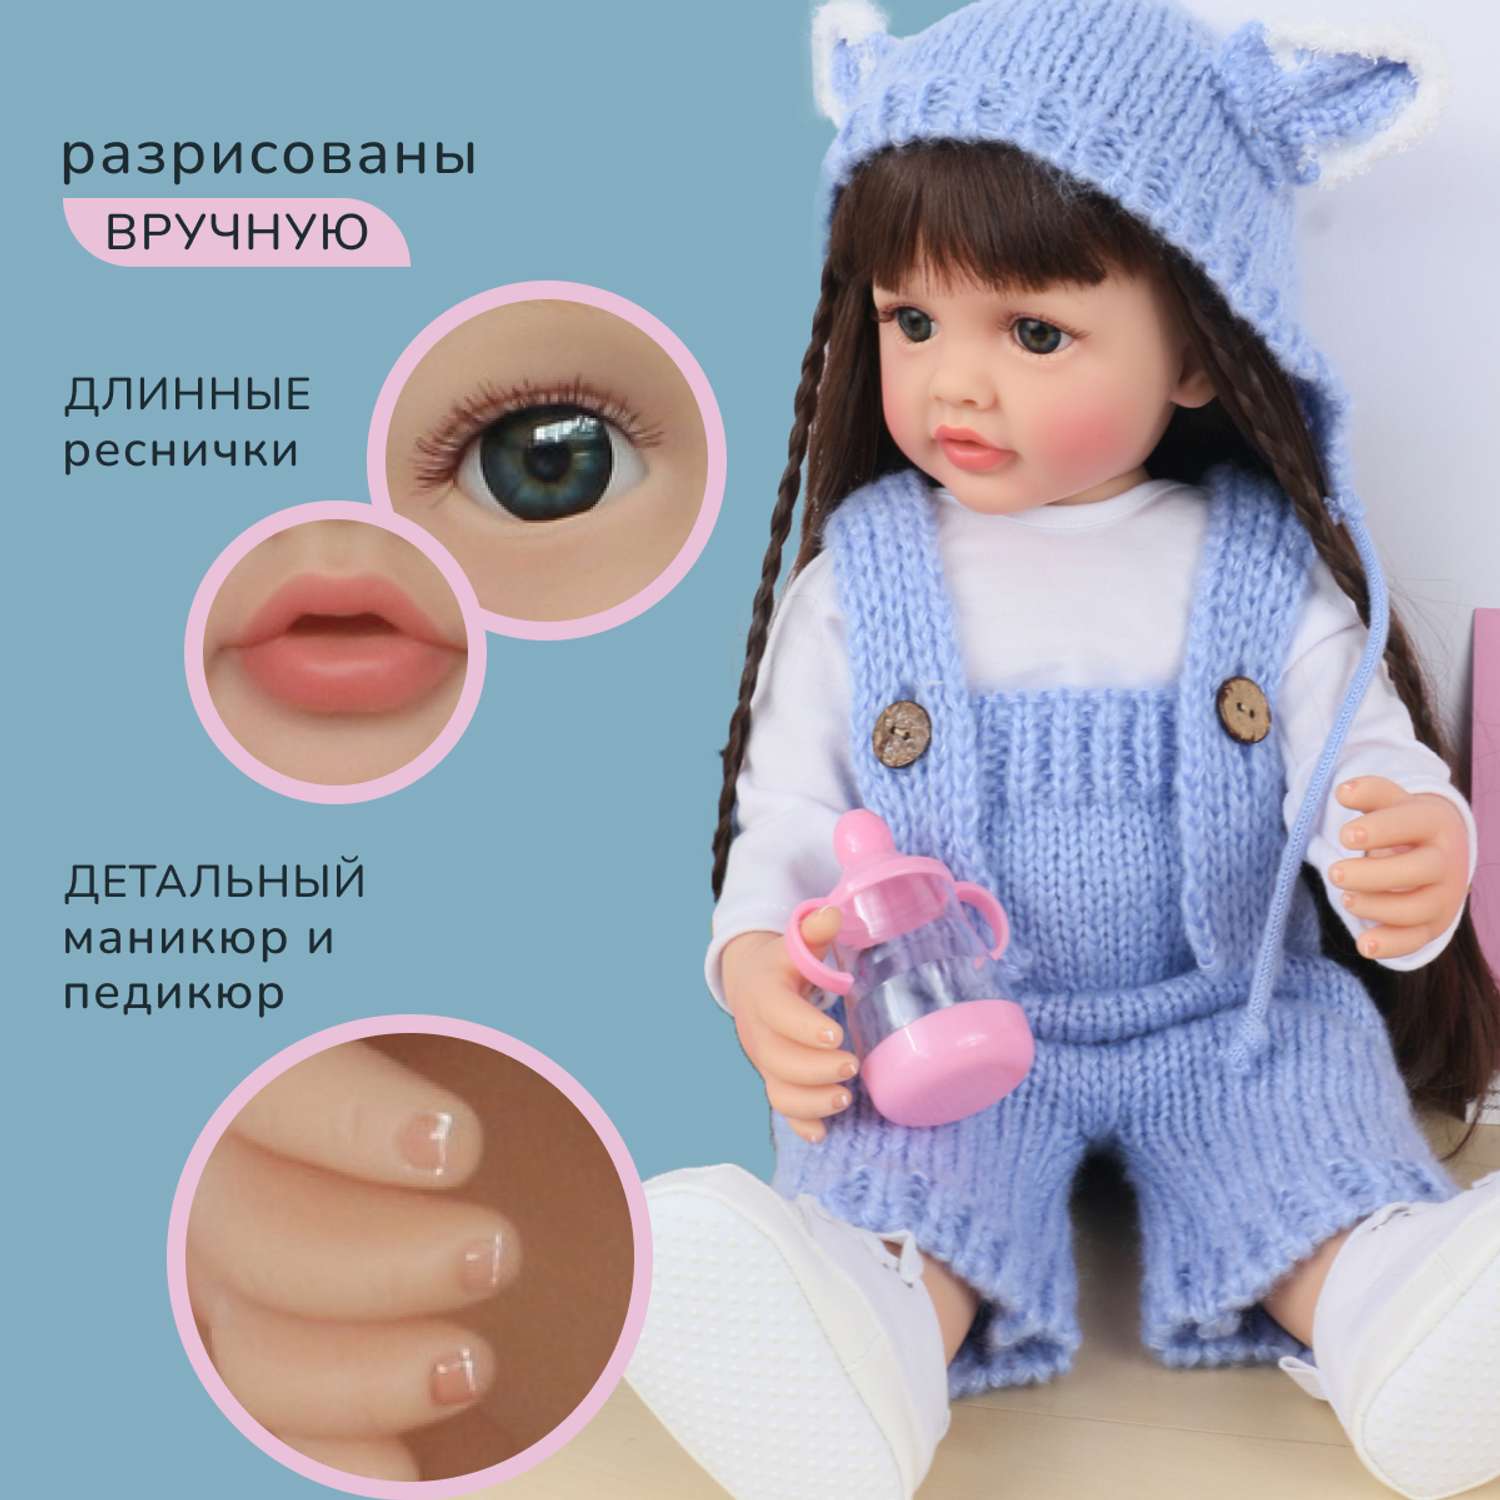 Кукла Реборн QA BABY Елизавета девочка большая пупс набор игрушки для девочки 55 см 5515 - фото 10